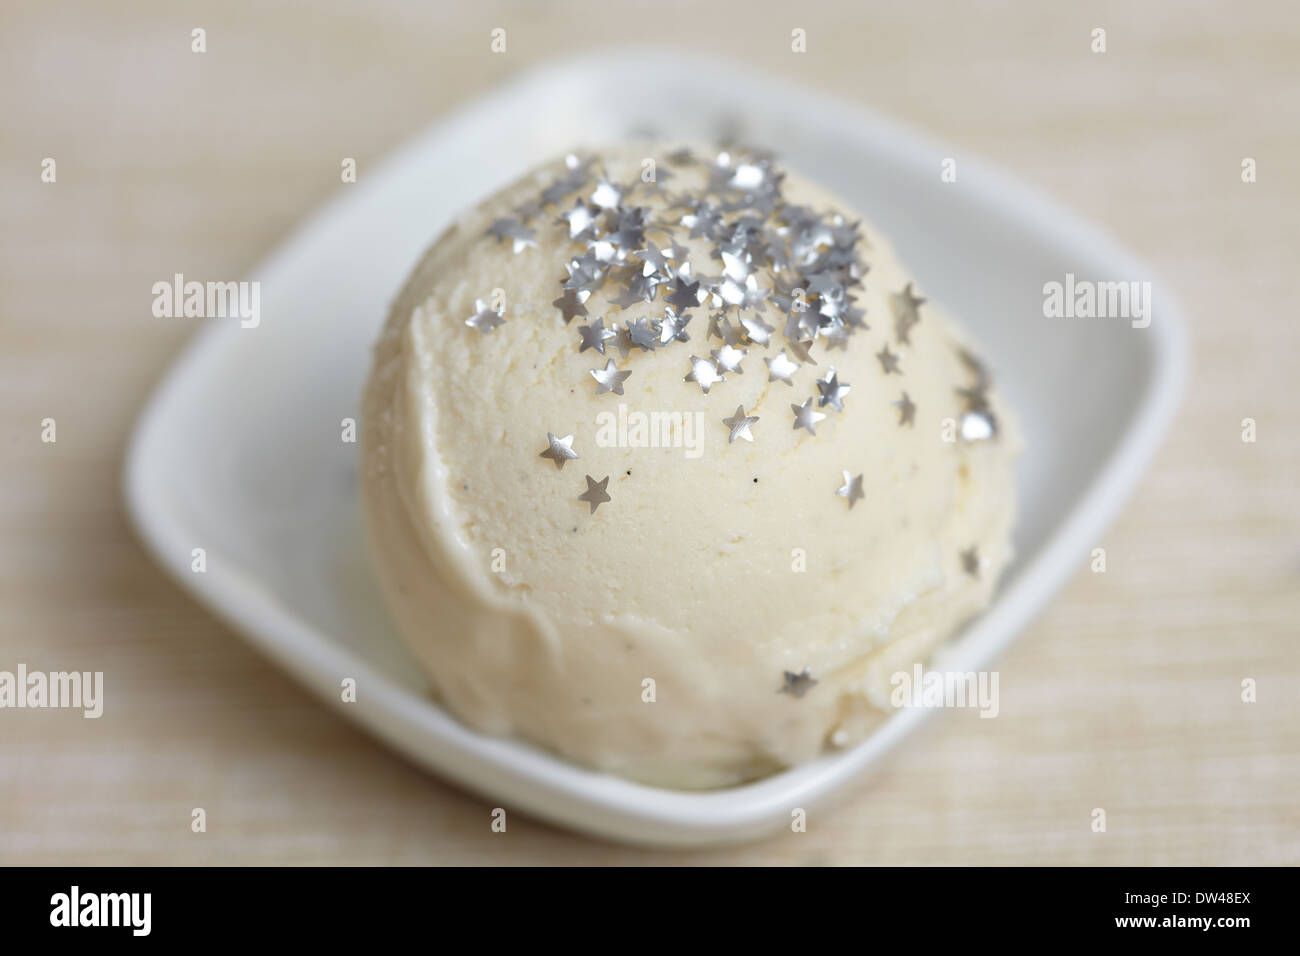 Boule de glace au yaourt congelé fait maison avec des étoiles pour la  décoration comestibles Photo Stock - Alamy